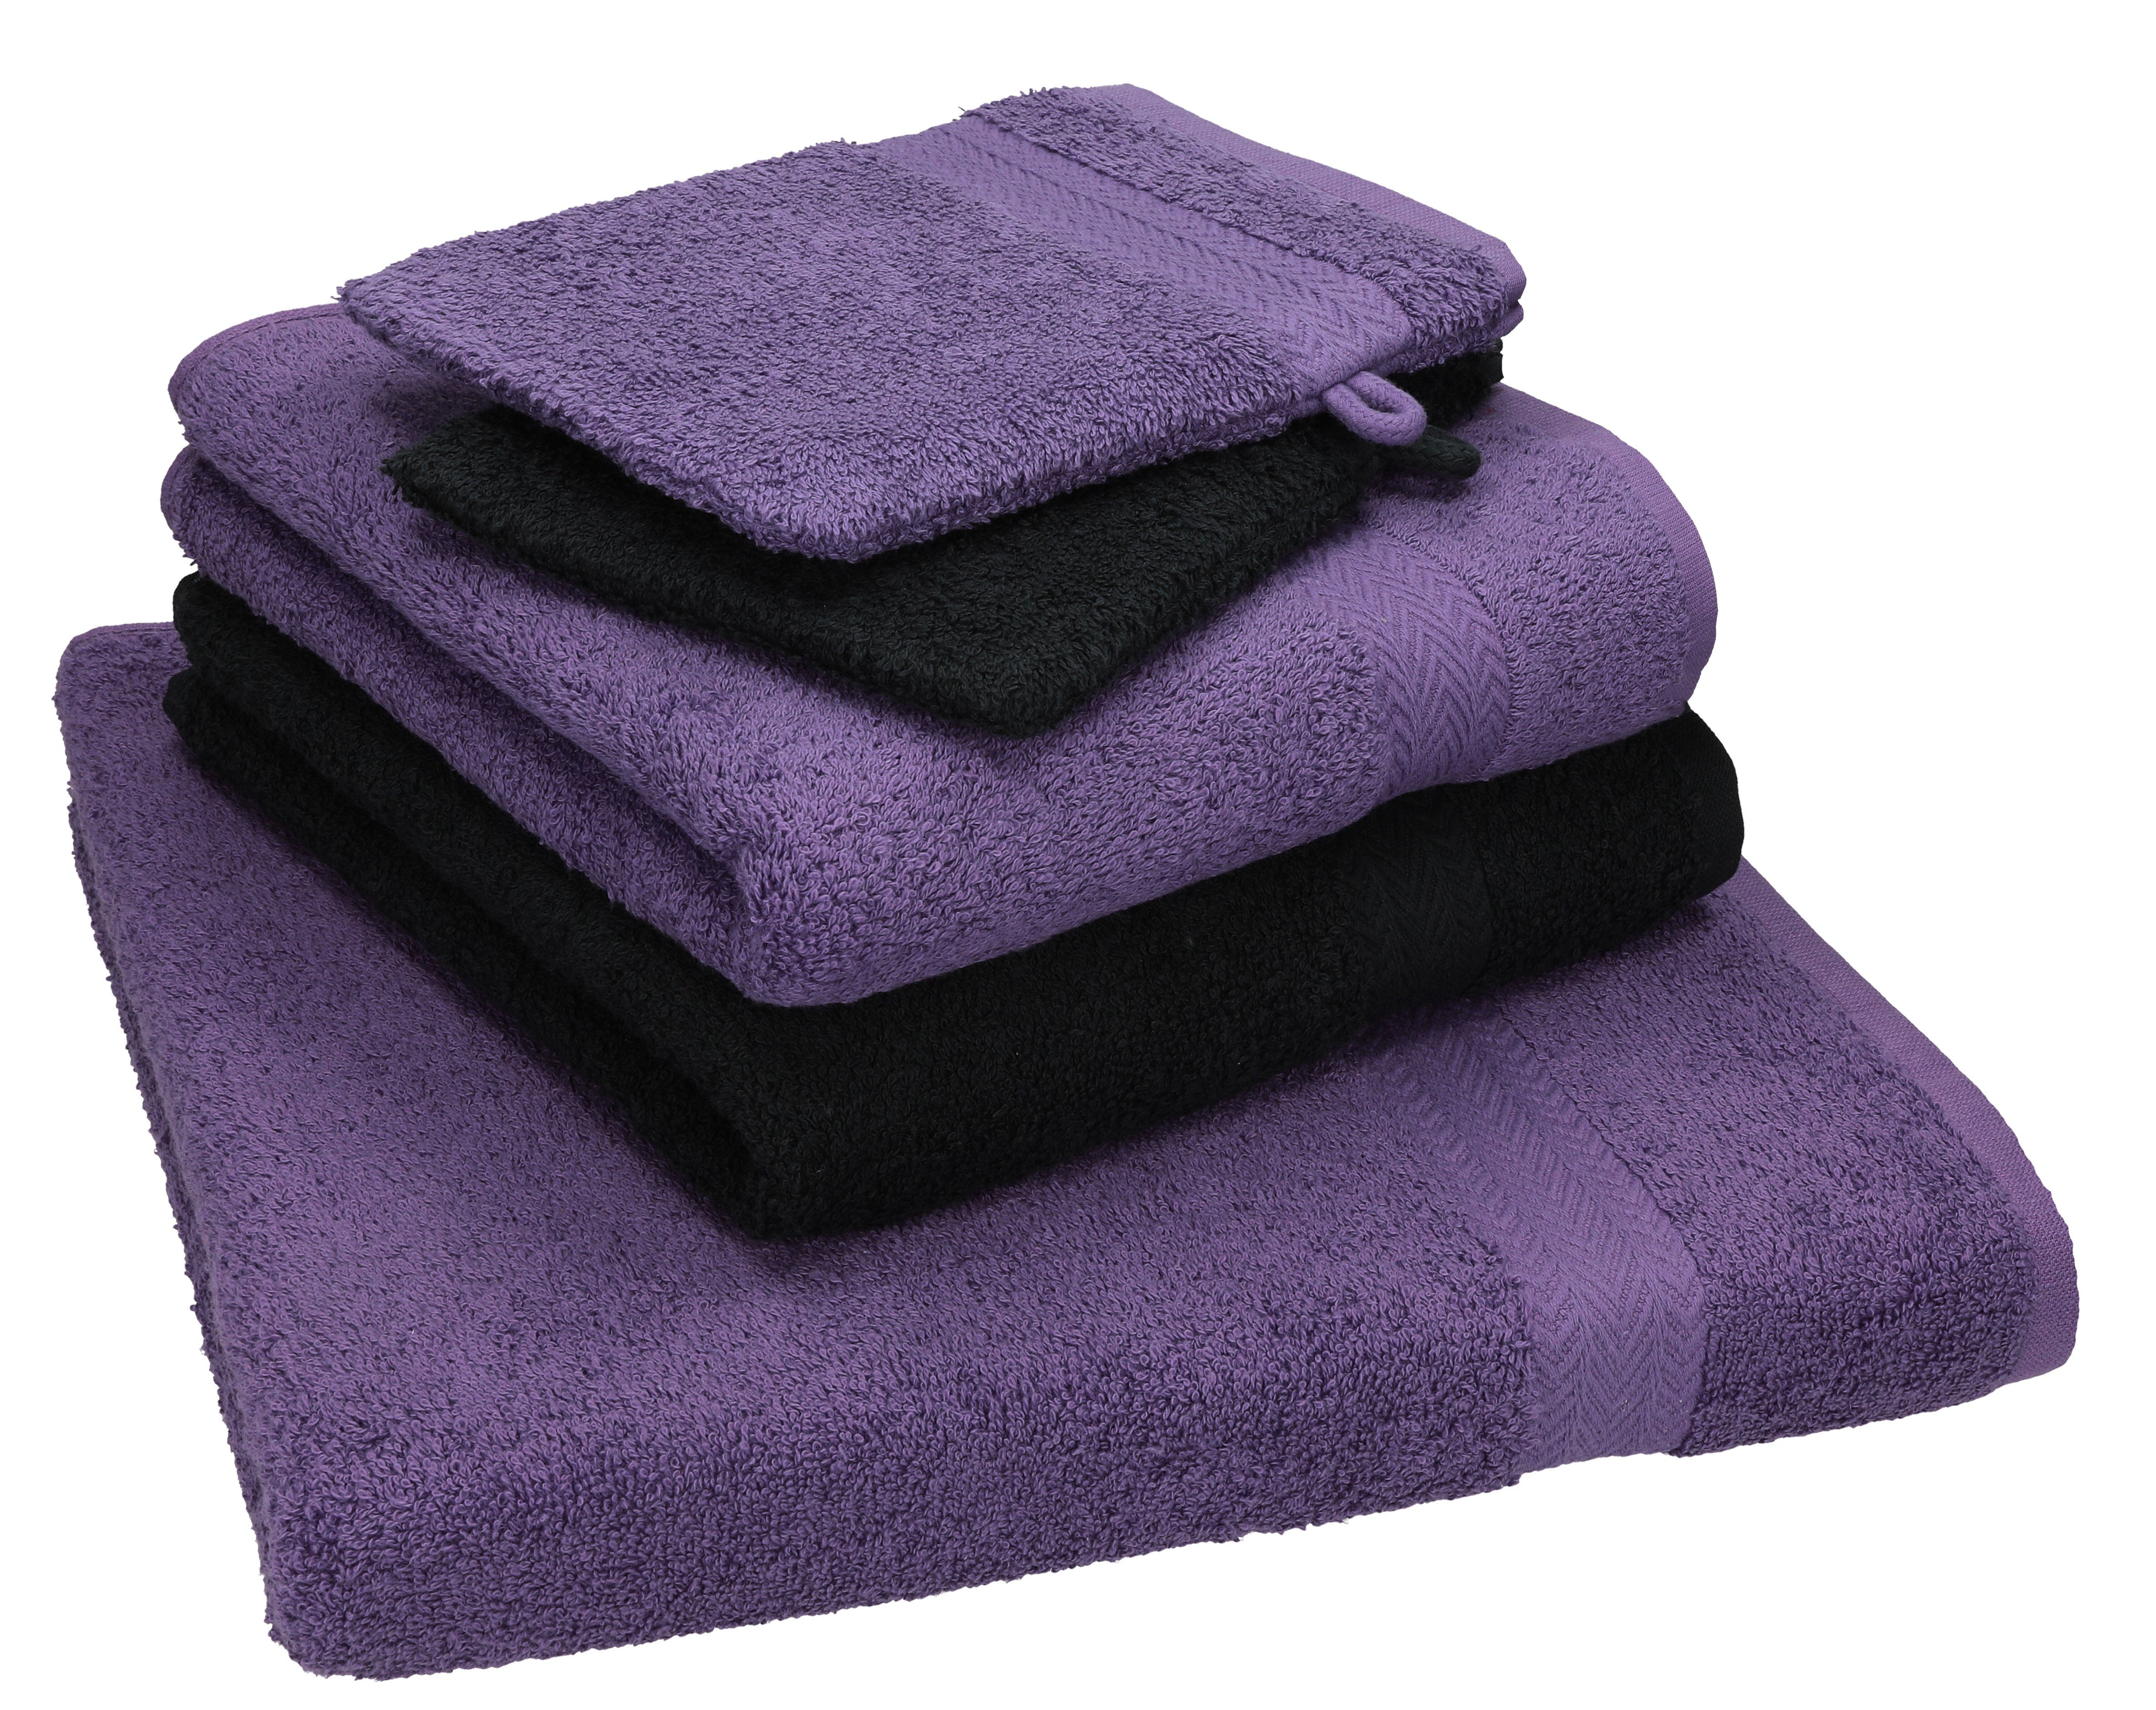 Set 2 Baumwolle 2 Handtücher Handtuch Pack Single 100% Waschhandschuhe, Duschtuch Handtuch 5 Set Betz 100% 1 TLG. Baumwolle lila-schwarz